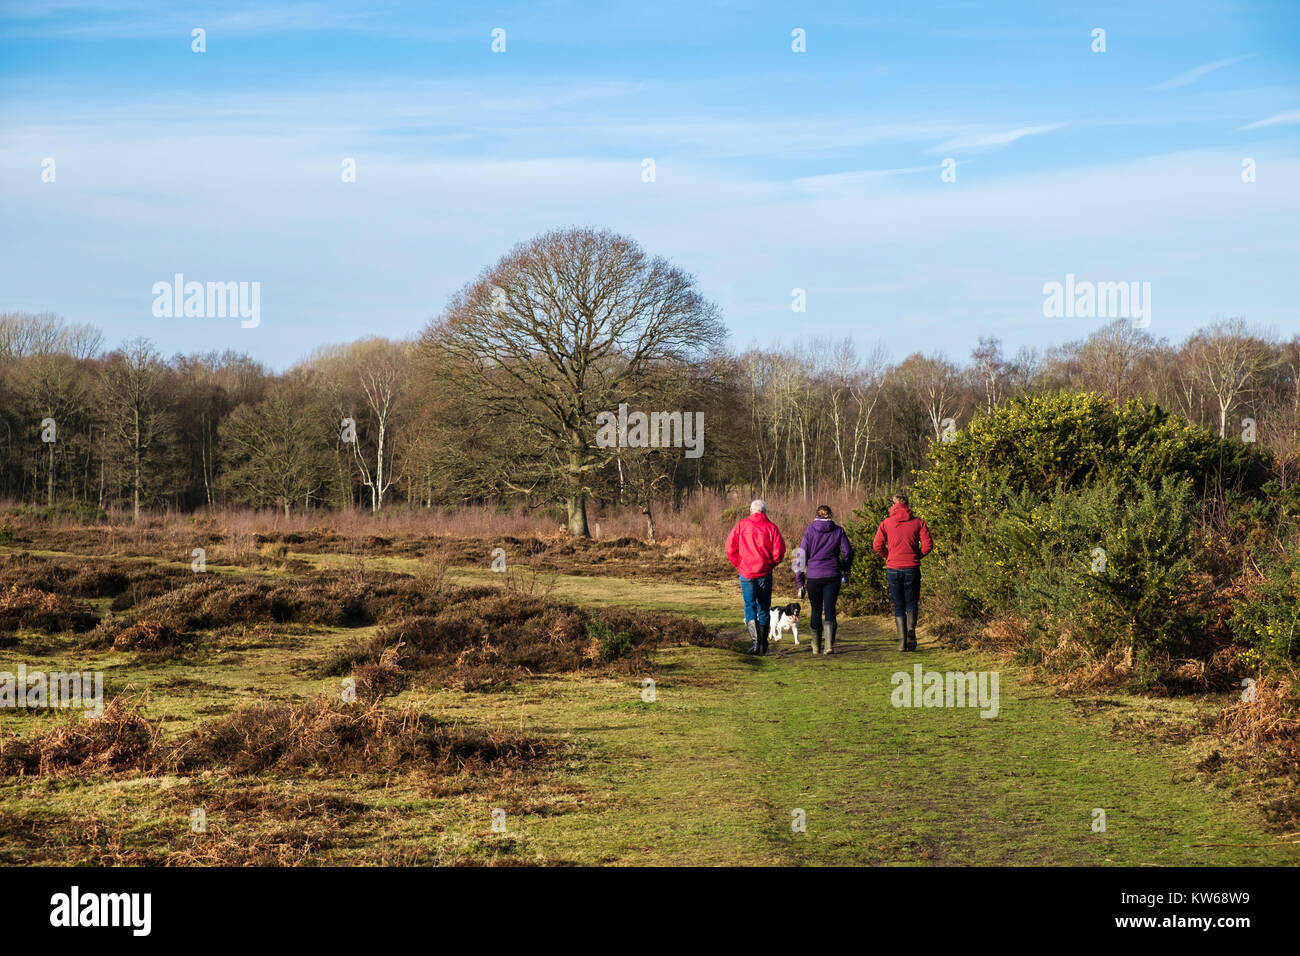 Personnes sur un pays de marche à pied avec un chien sur la lande dans le Kent Wildlife Trust réserve naturelle. Landes Hothfield Ashford Kent Angleterre Royaume-uni Grande-Bretagne Banque D'Images